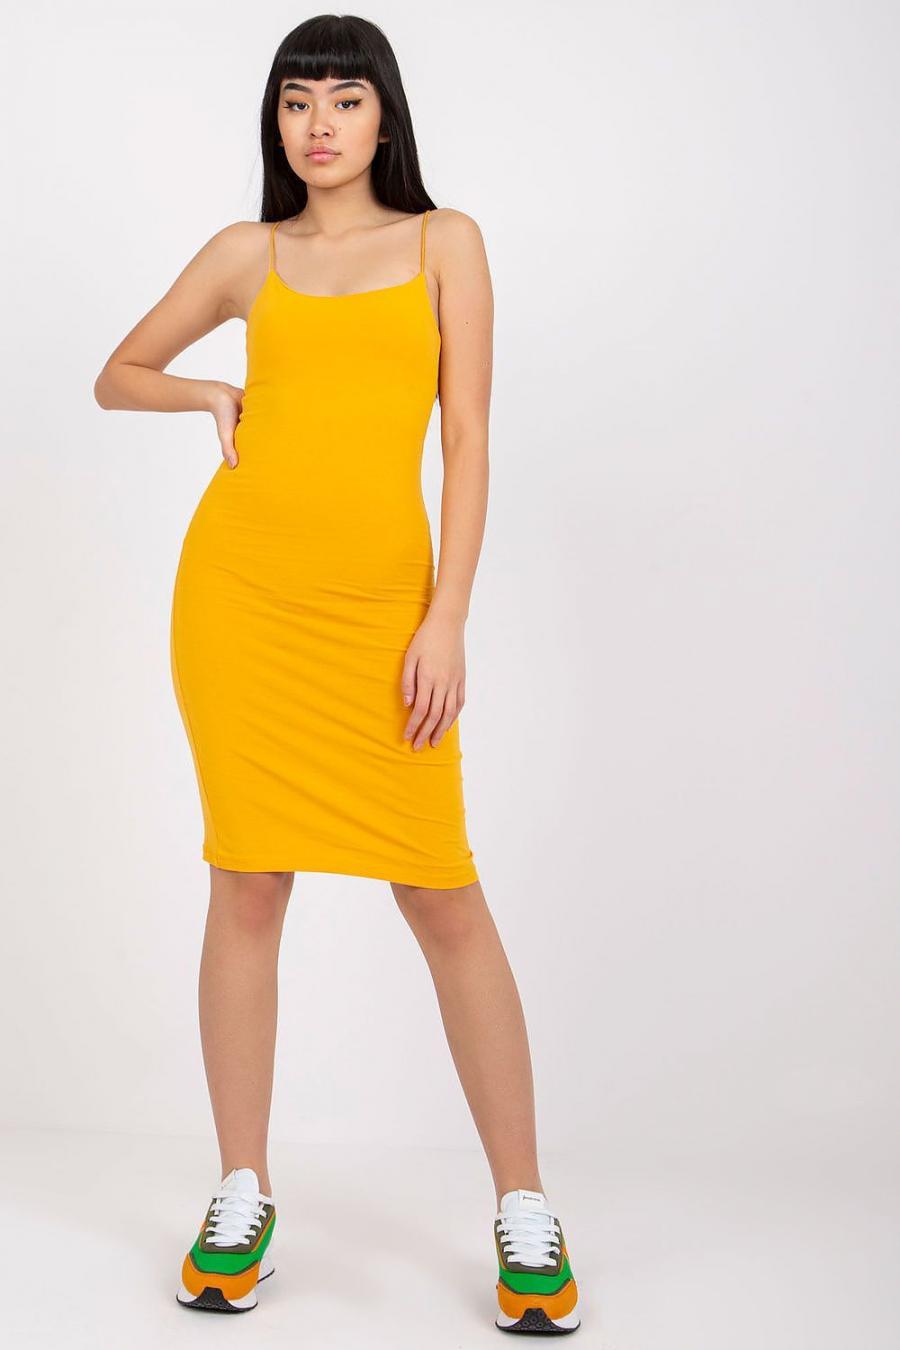 Ostatní značky šaty dámské 165152 - žlutá - velikost XS